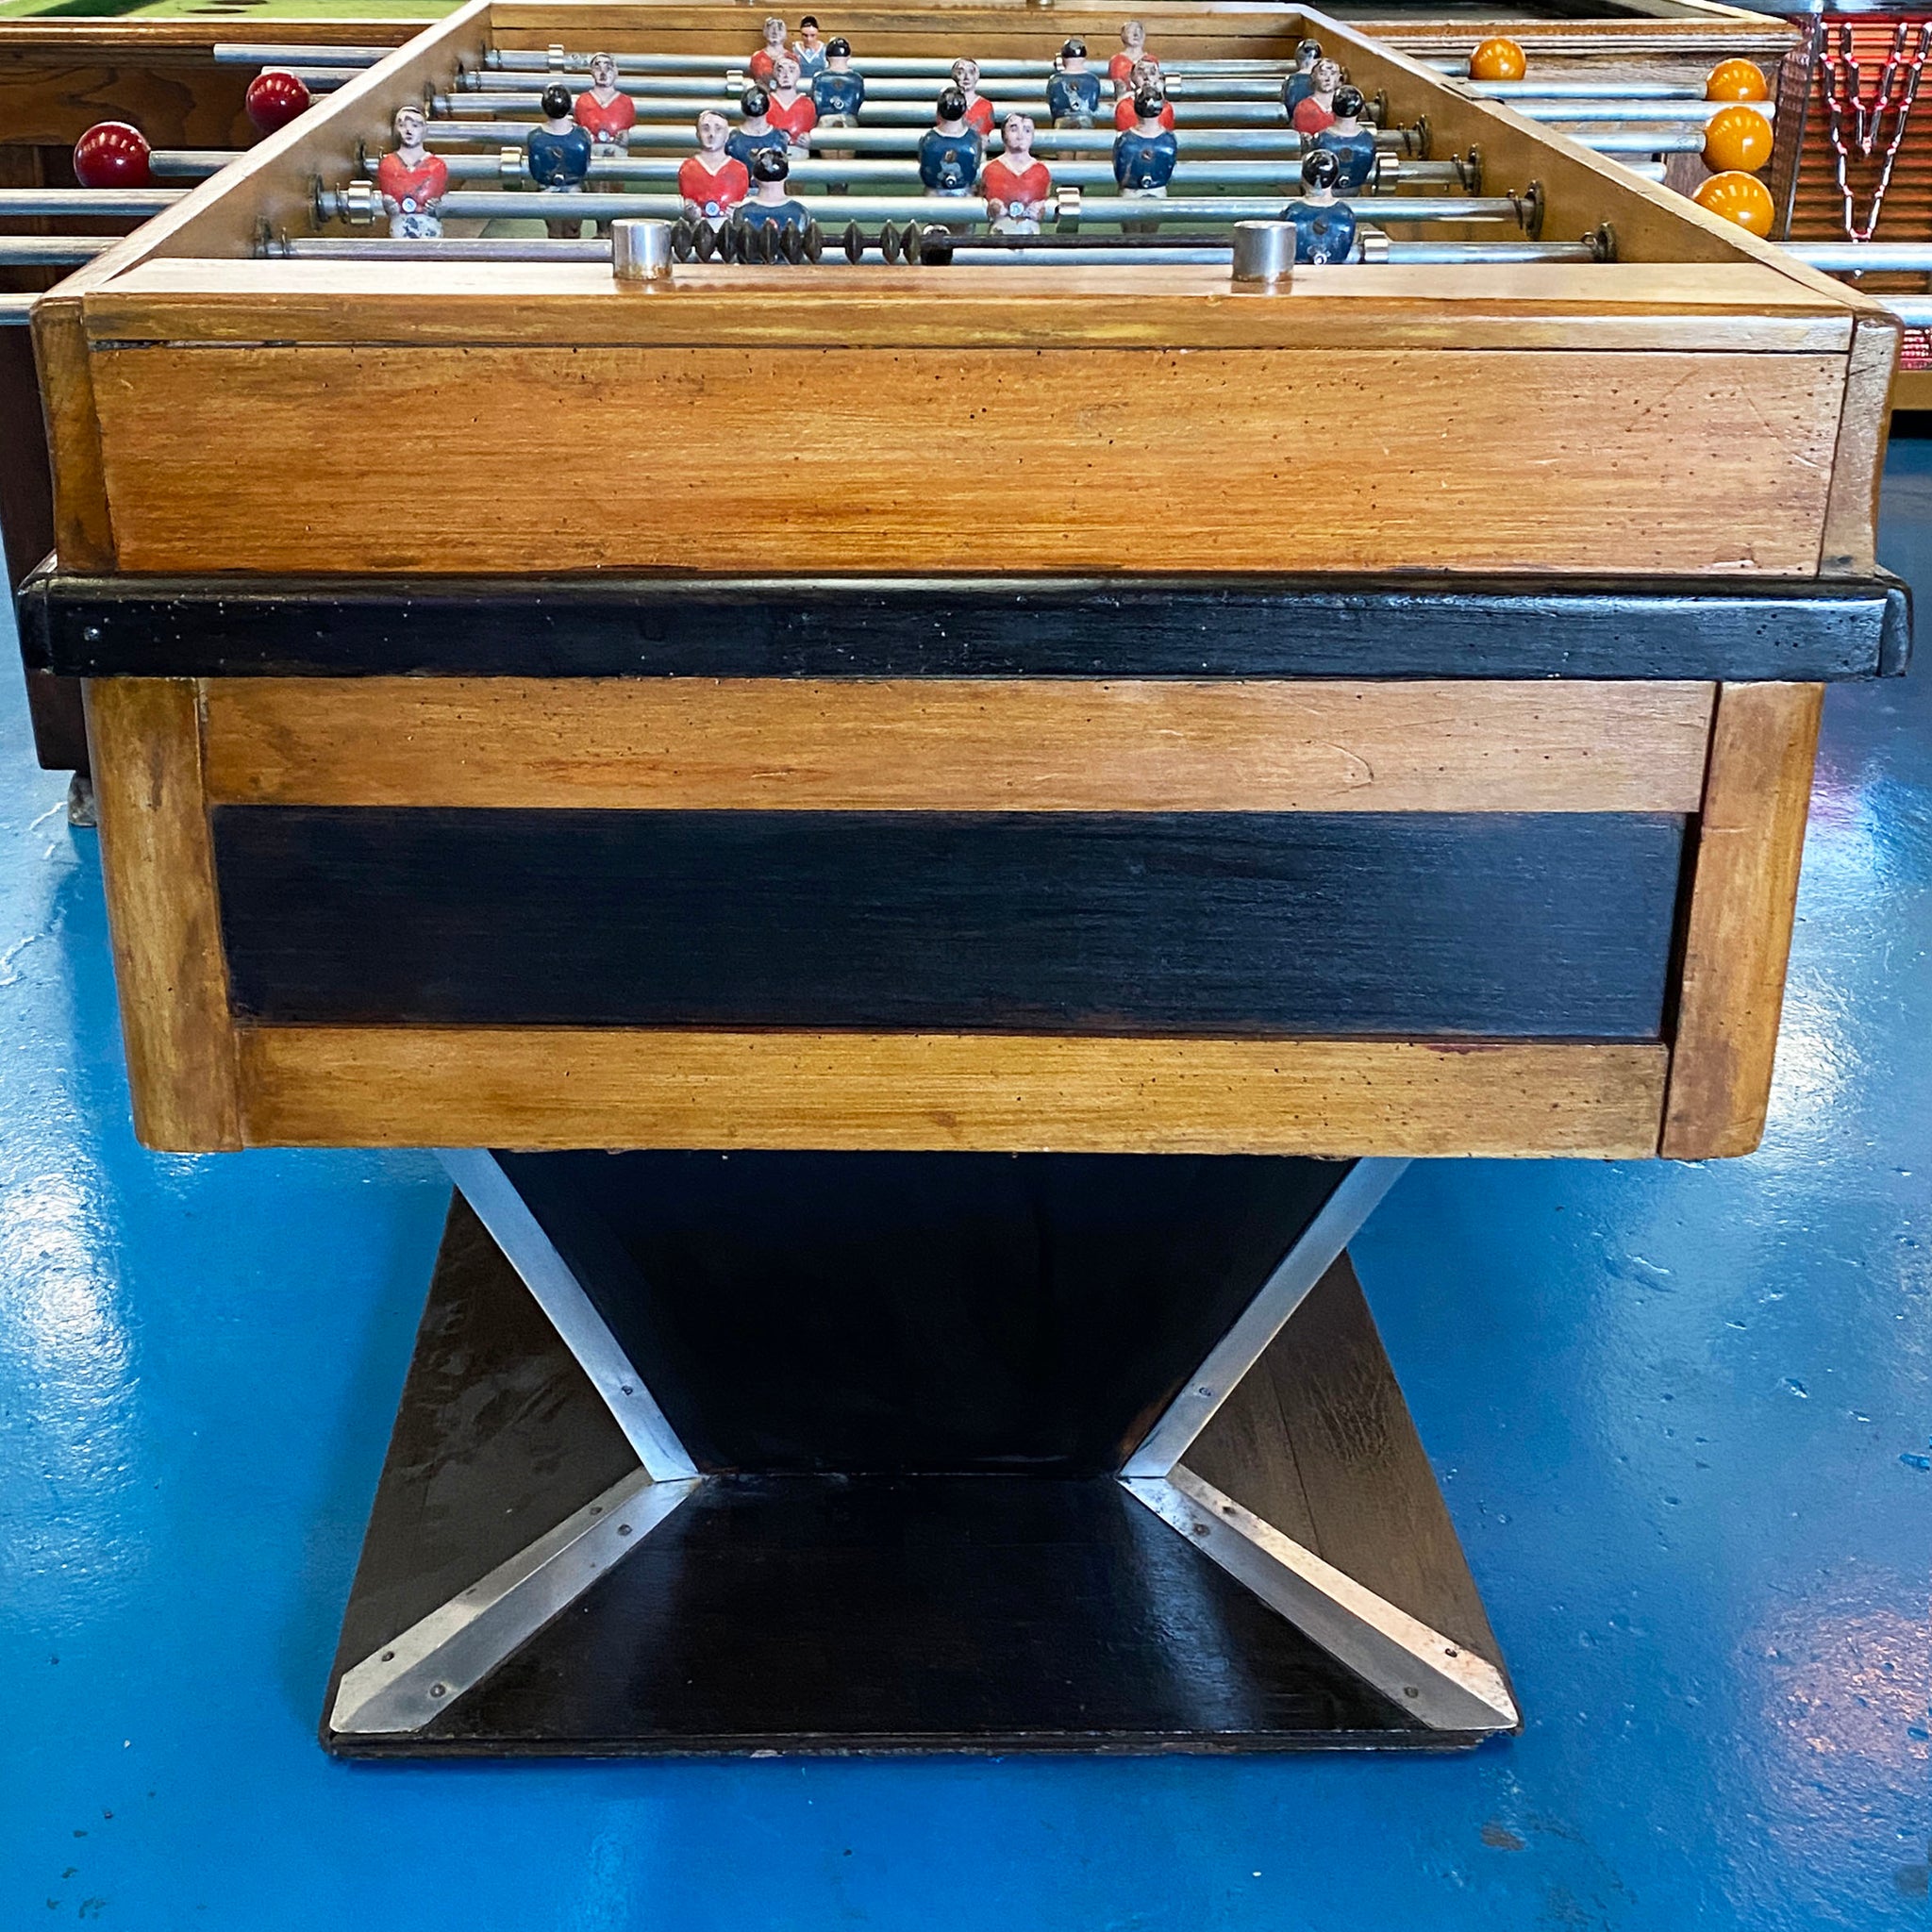 Original Vintage Foosball Table by Finale